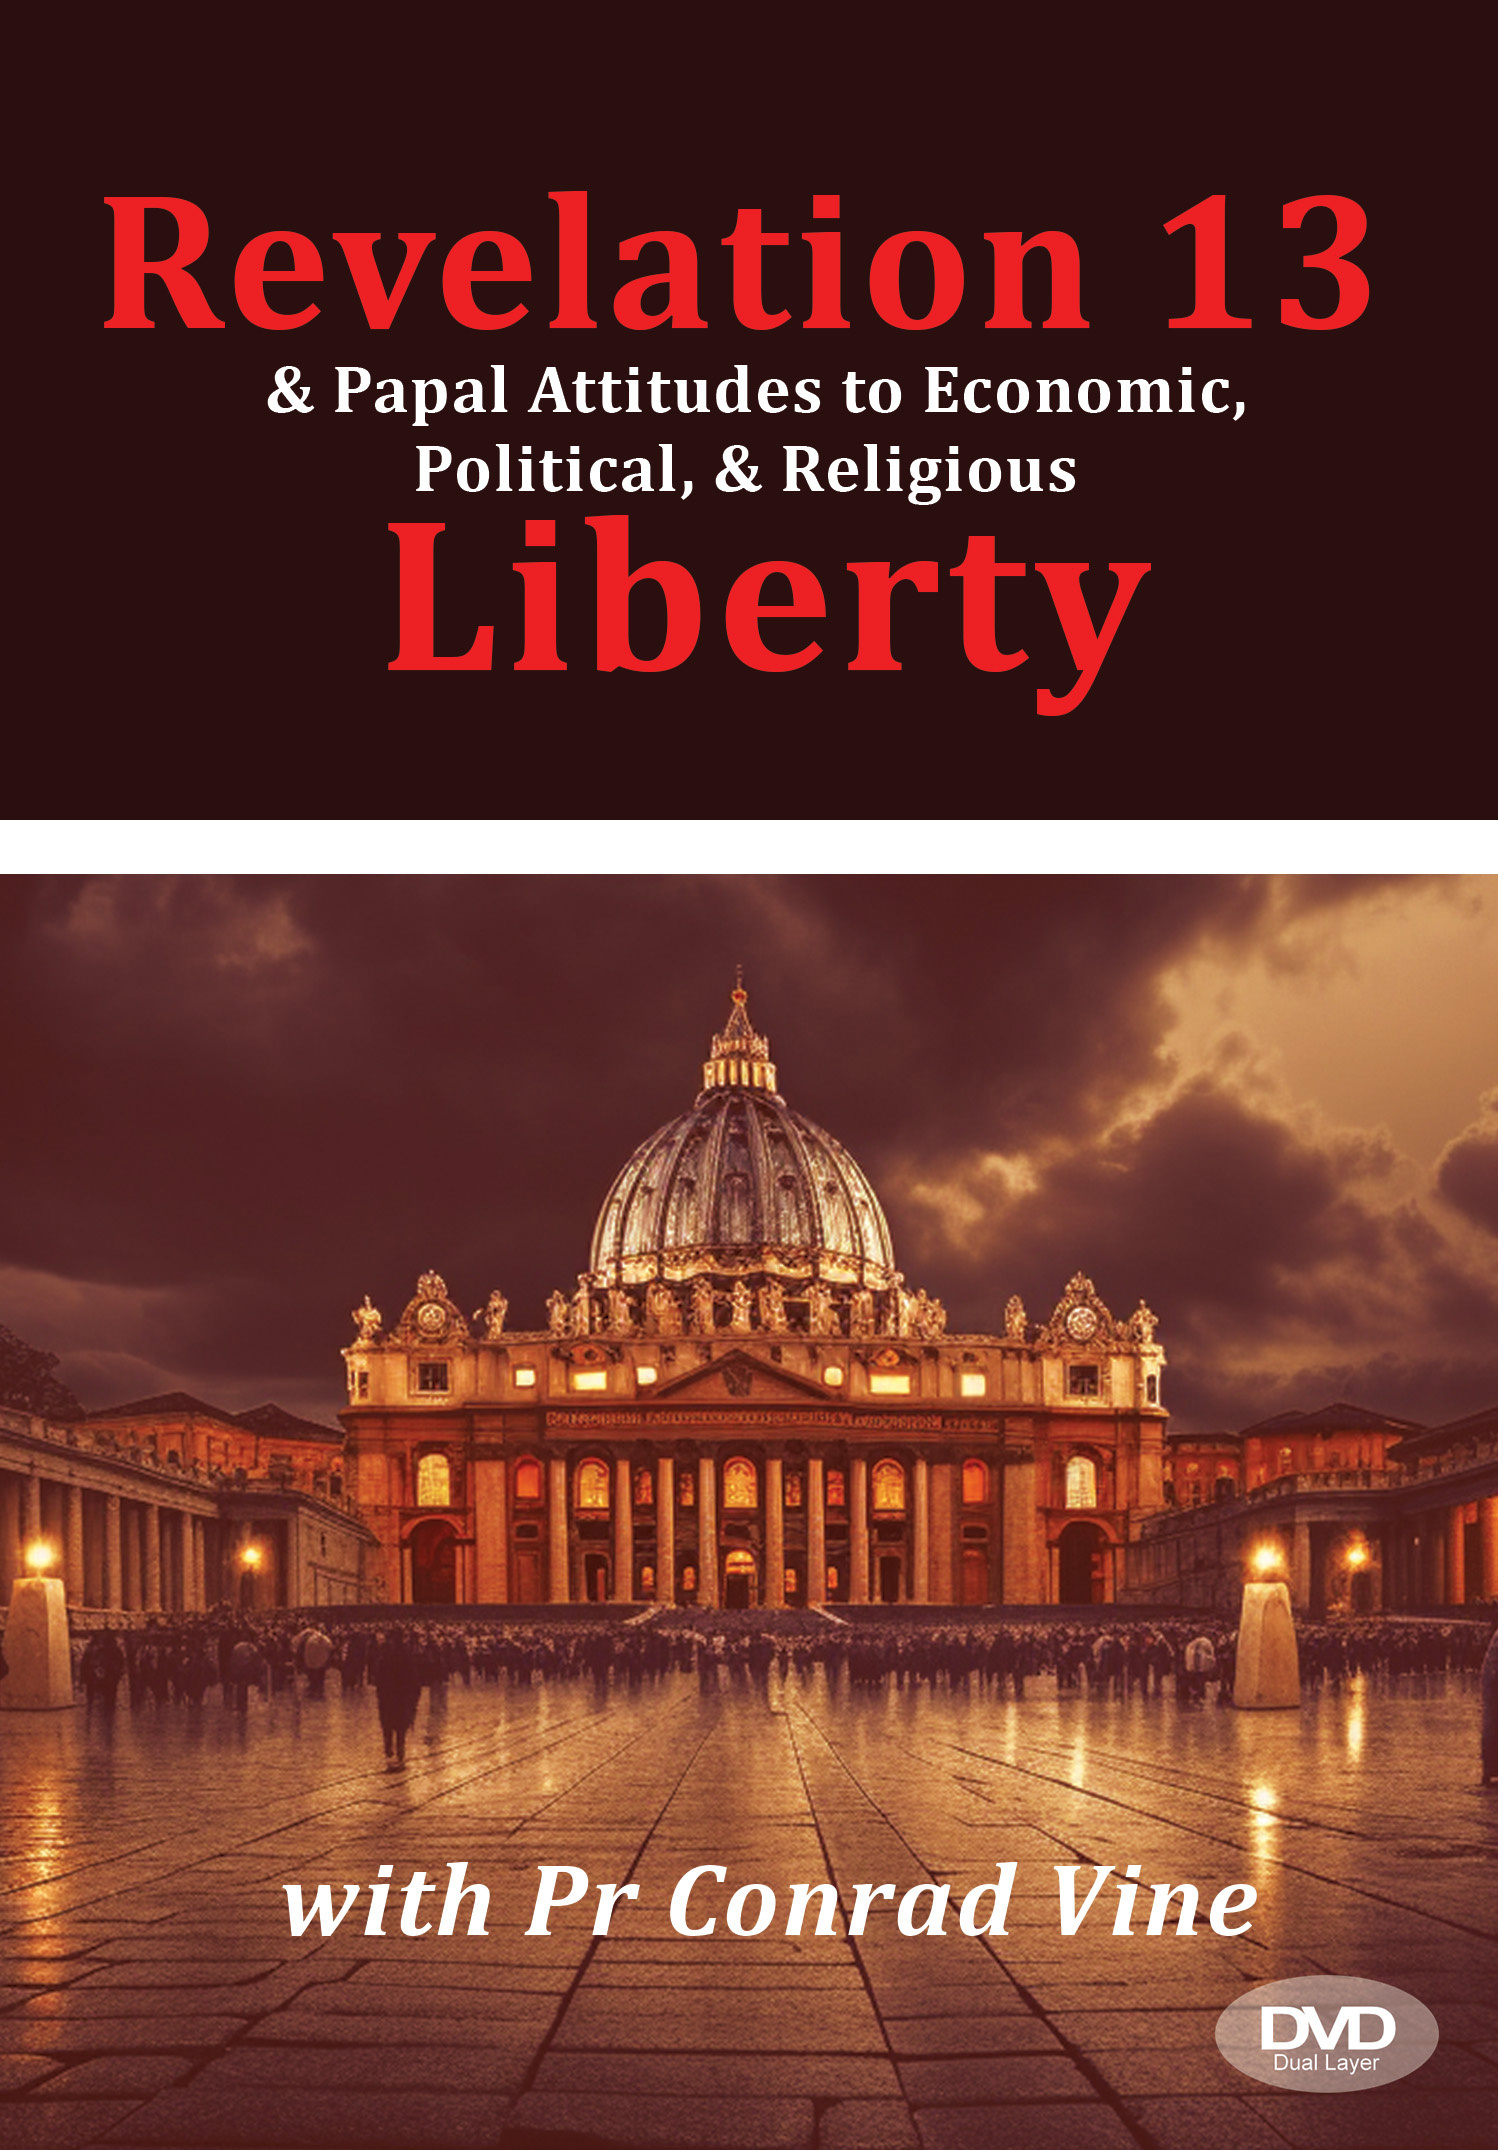 Revelation 13 and Papal Attitudes to Religious Liberty DVD